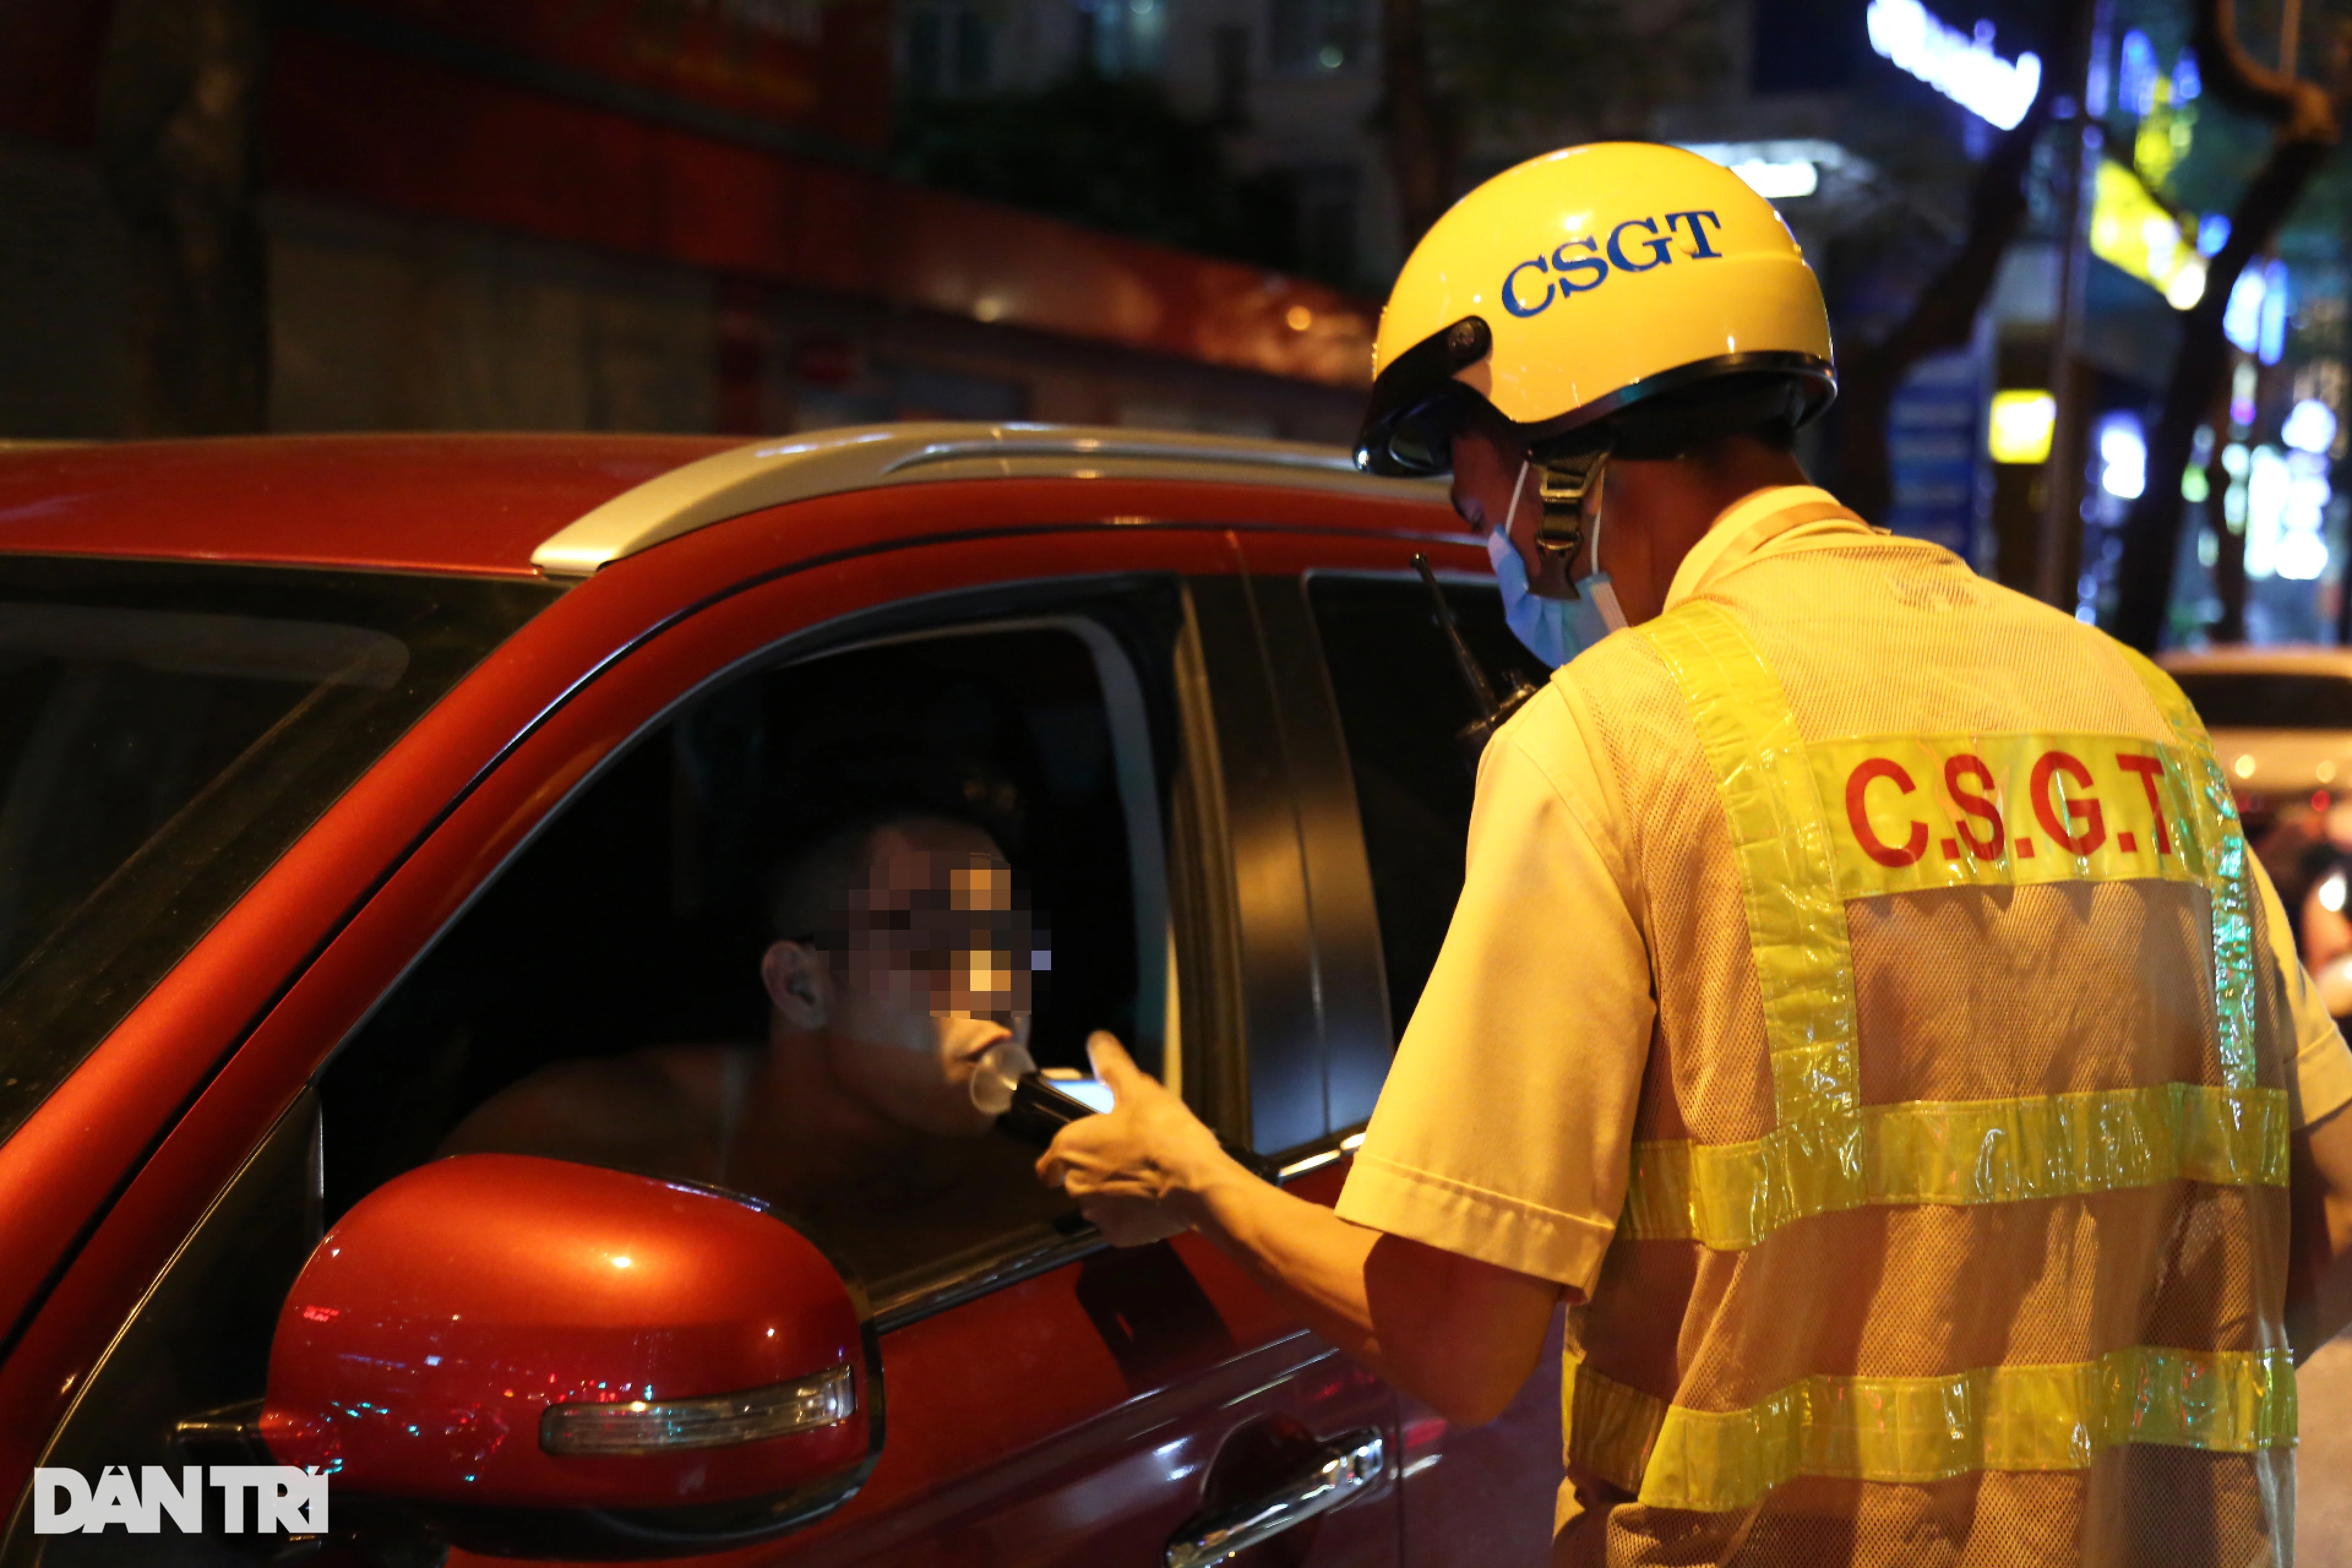 Hà Nội: CSGT hóa trang gần quán nhậu, xử lý ma men lái ô tô - 14